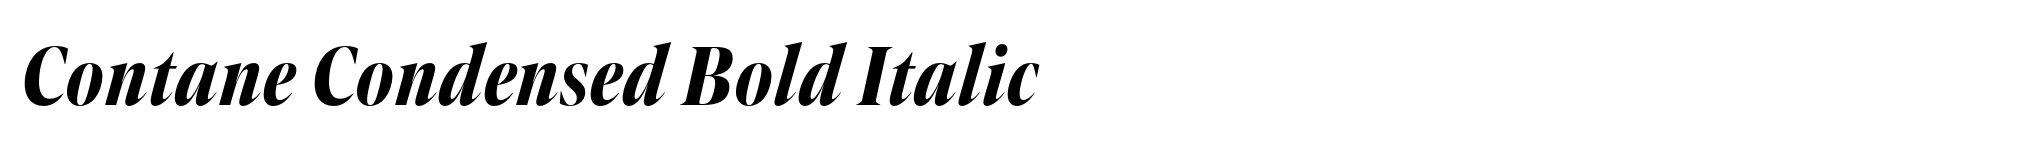 Contane Condensed Bold Italic image